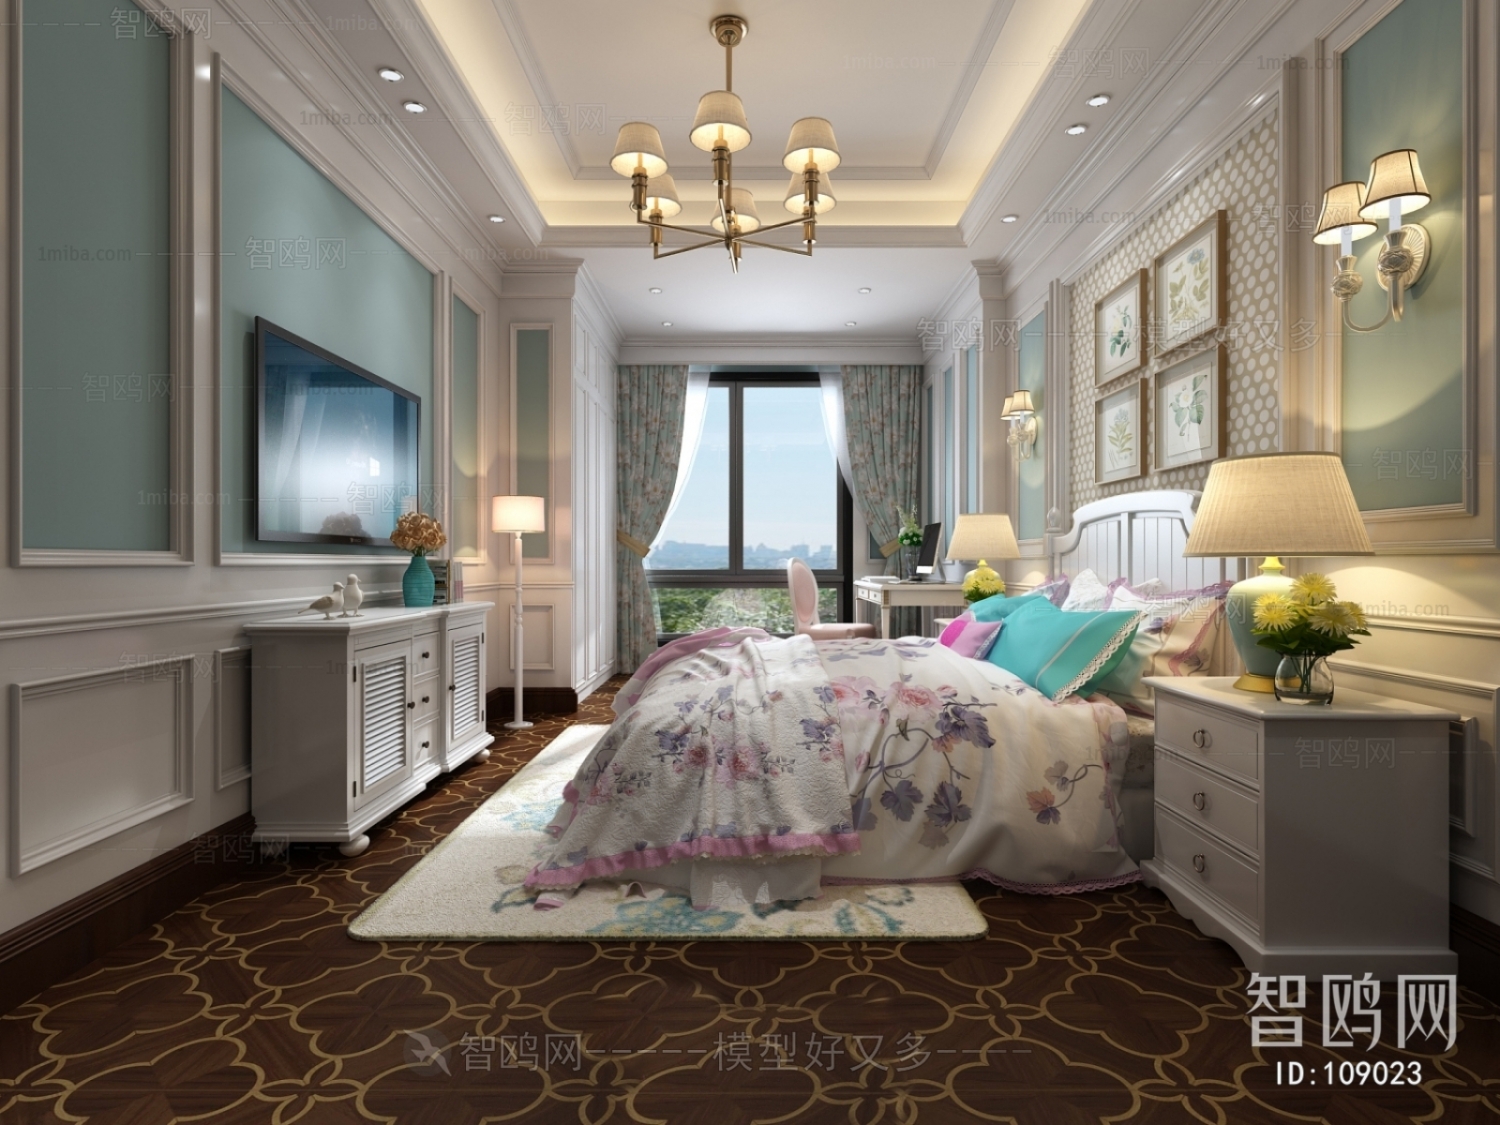 American Style Idyllic Style Bedroom